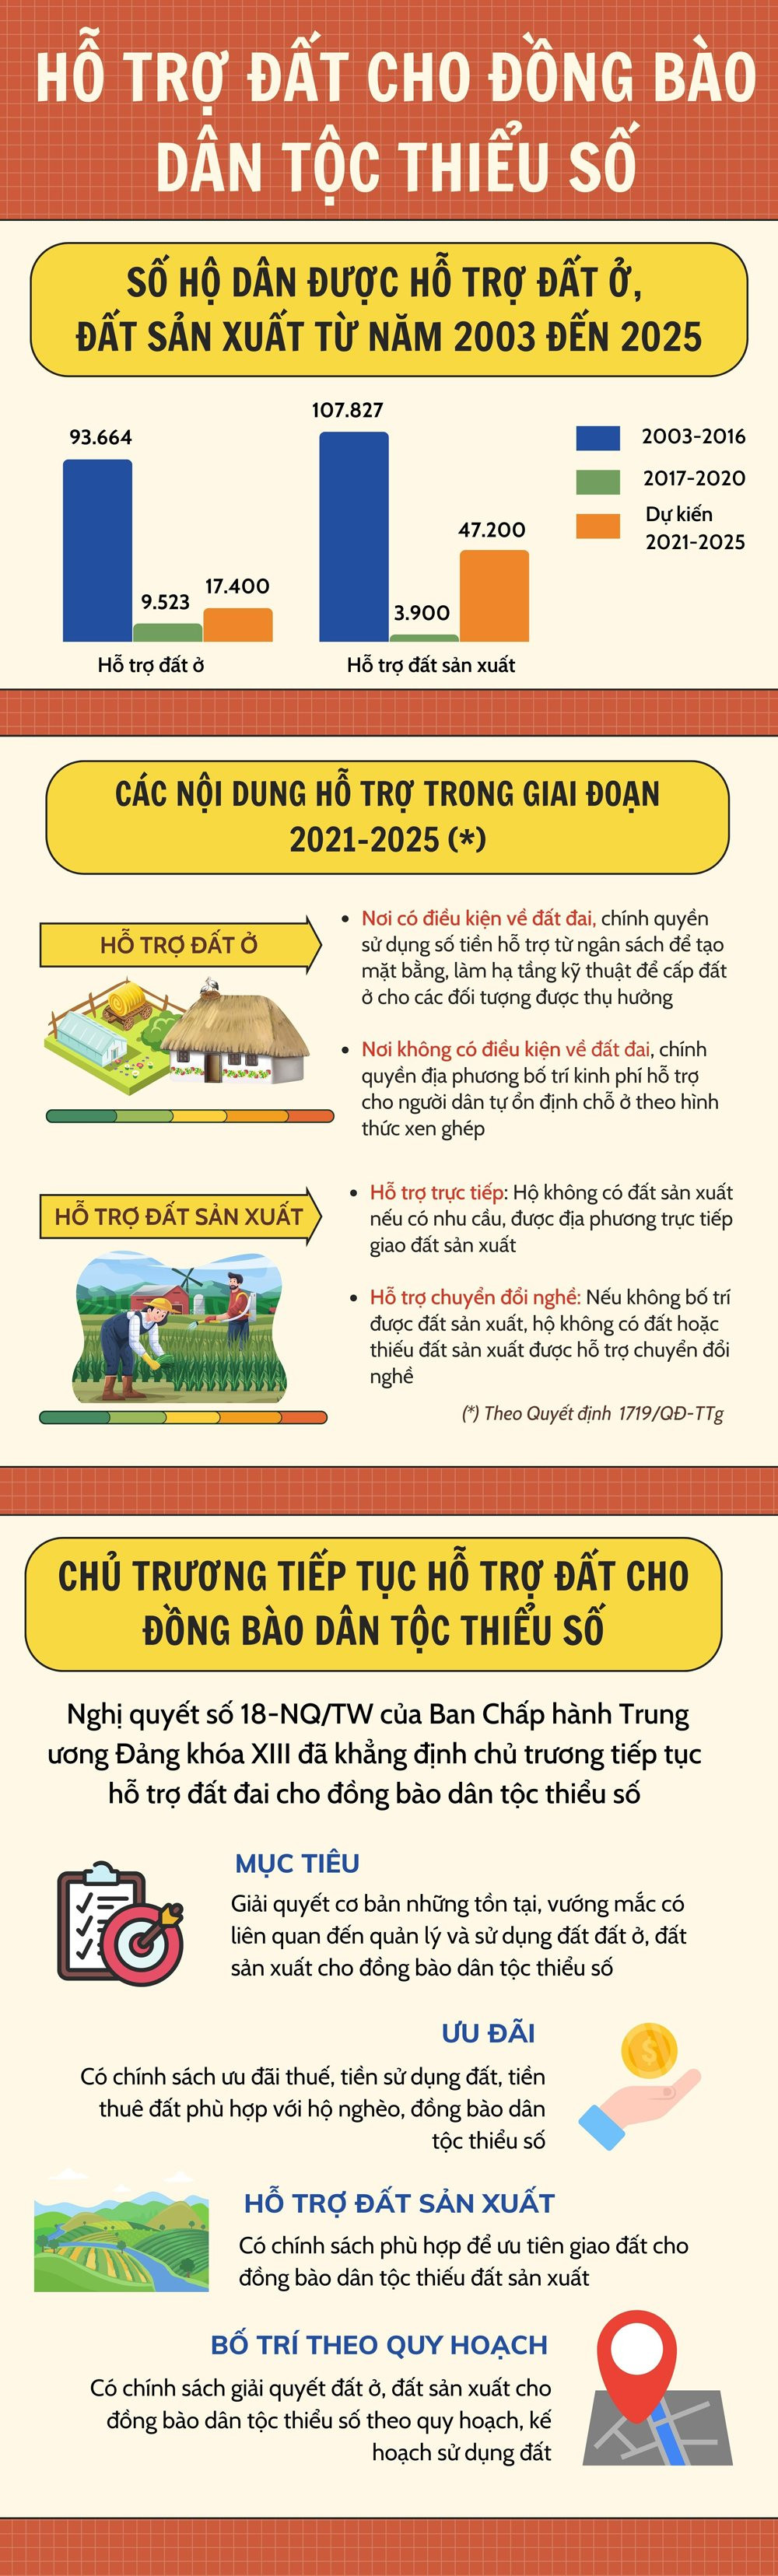 infographic-dat-cho-db-dtts-v3(1).jpg